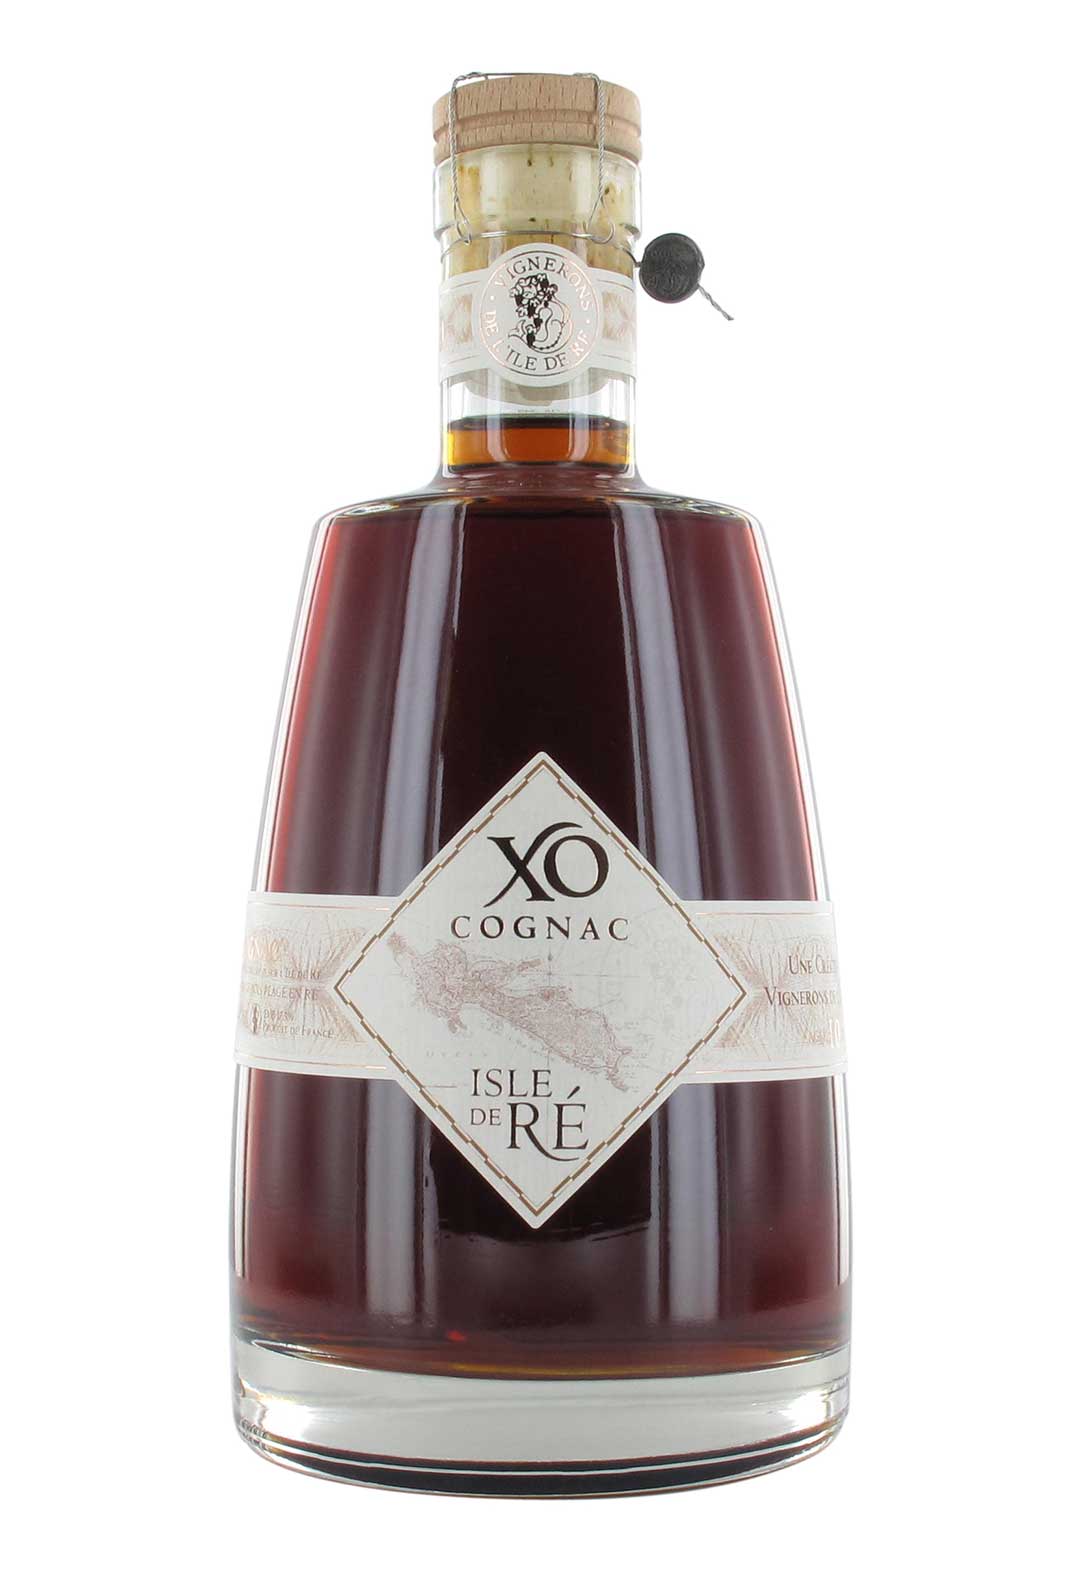 Cognac XO Isle de Ré